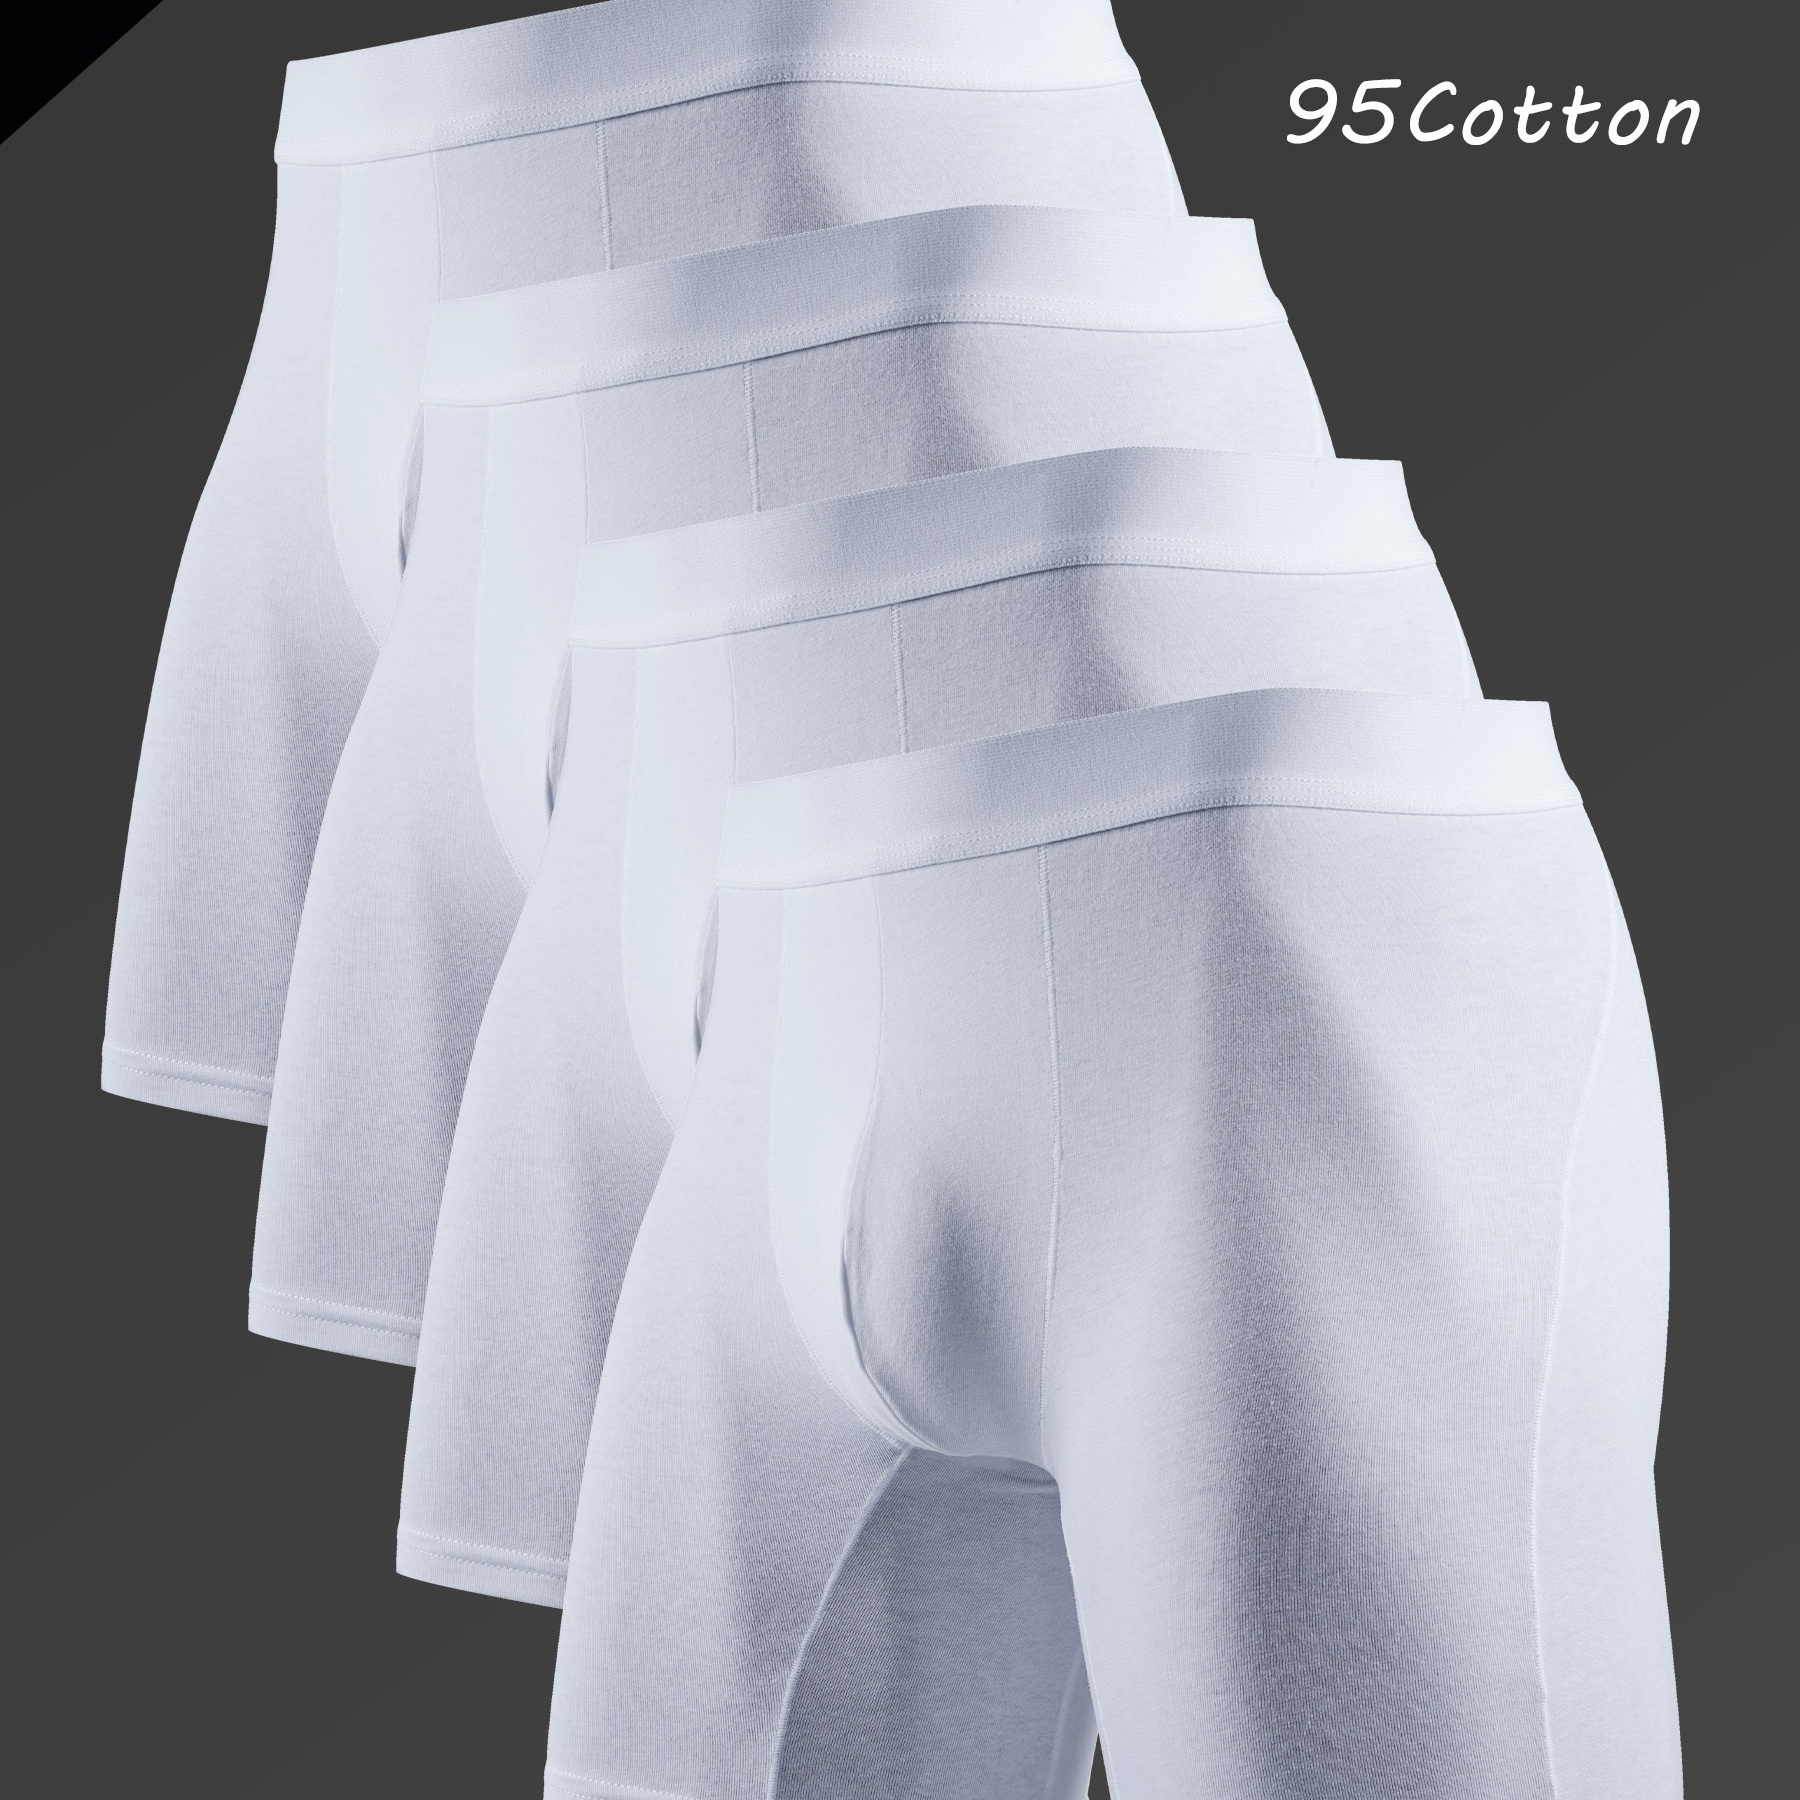 

4pcs Men's Cotton Anti-wear Leg Skin-friendly Soft And Comfortable U Pouch Breathable Stretchy Long Boxer Briefs Shorts, Casual Plain Color Boxer Trunks, Men's Underwear